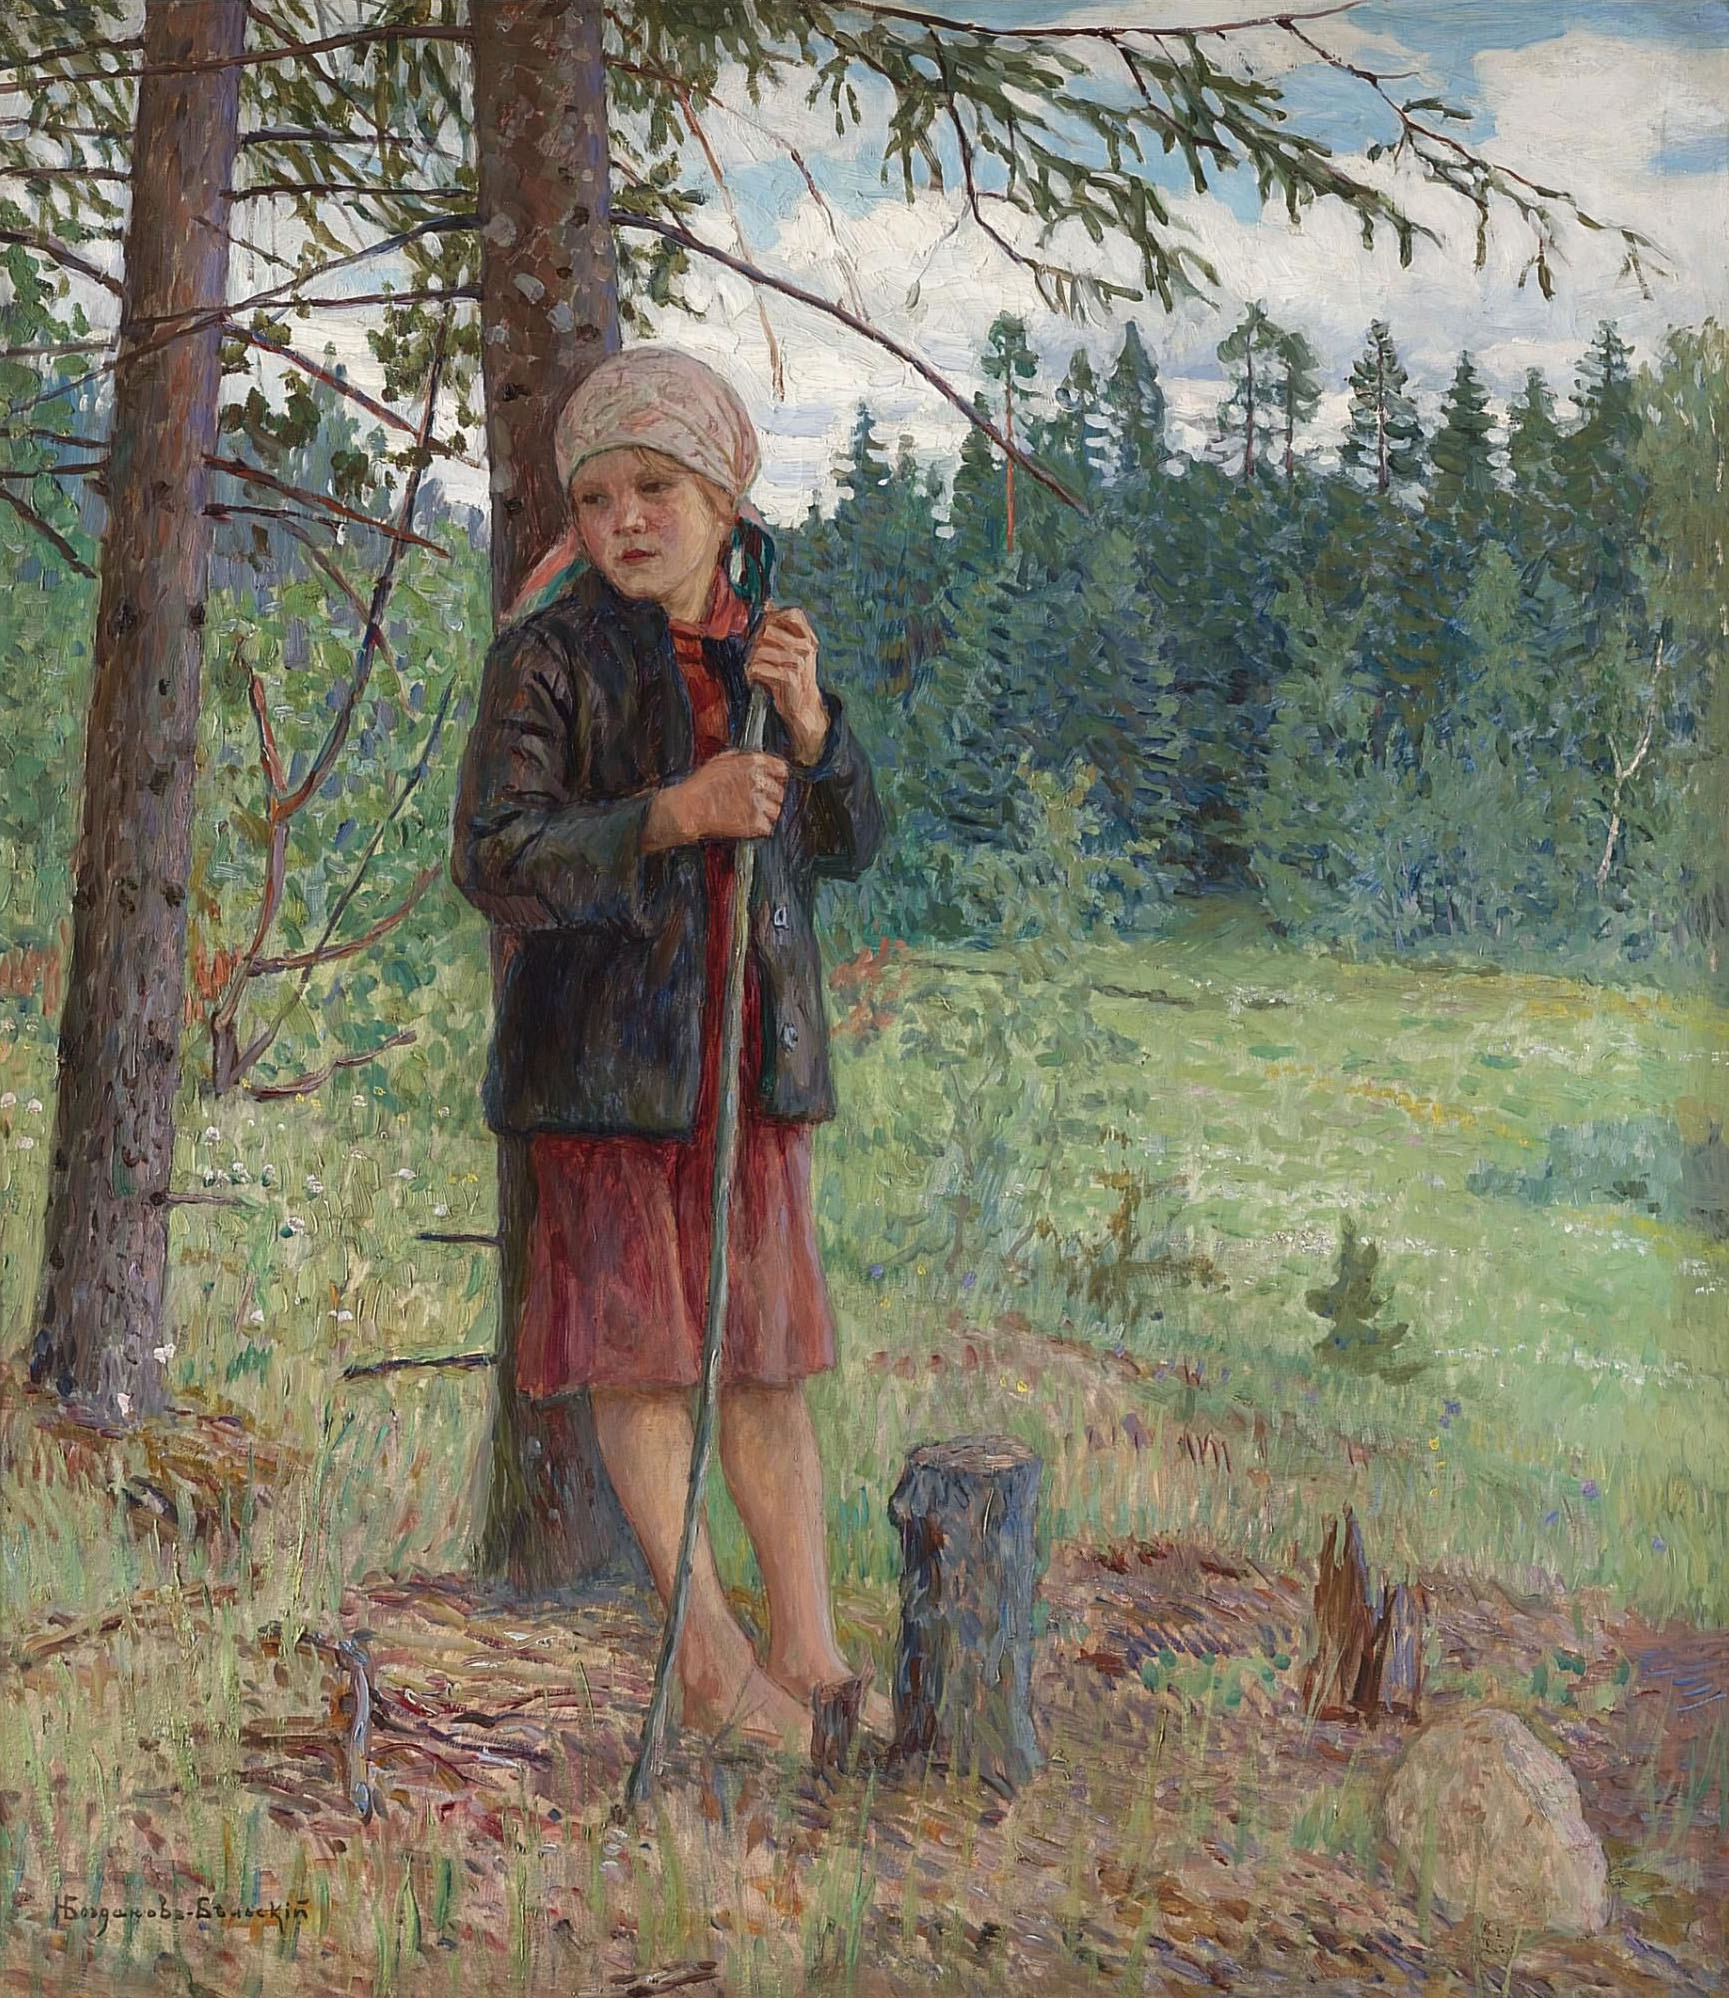 Богданов-Бельский. Девочка в лесу